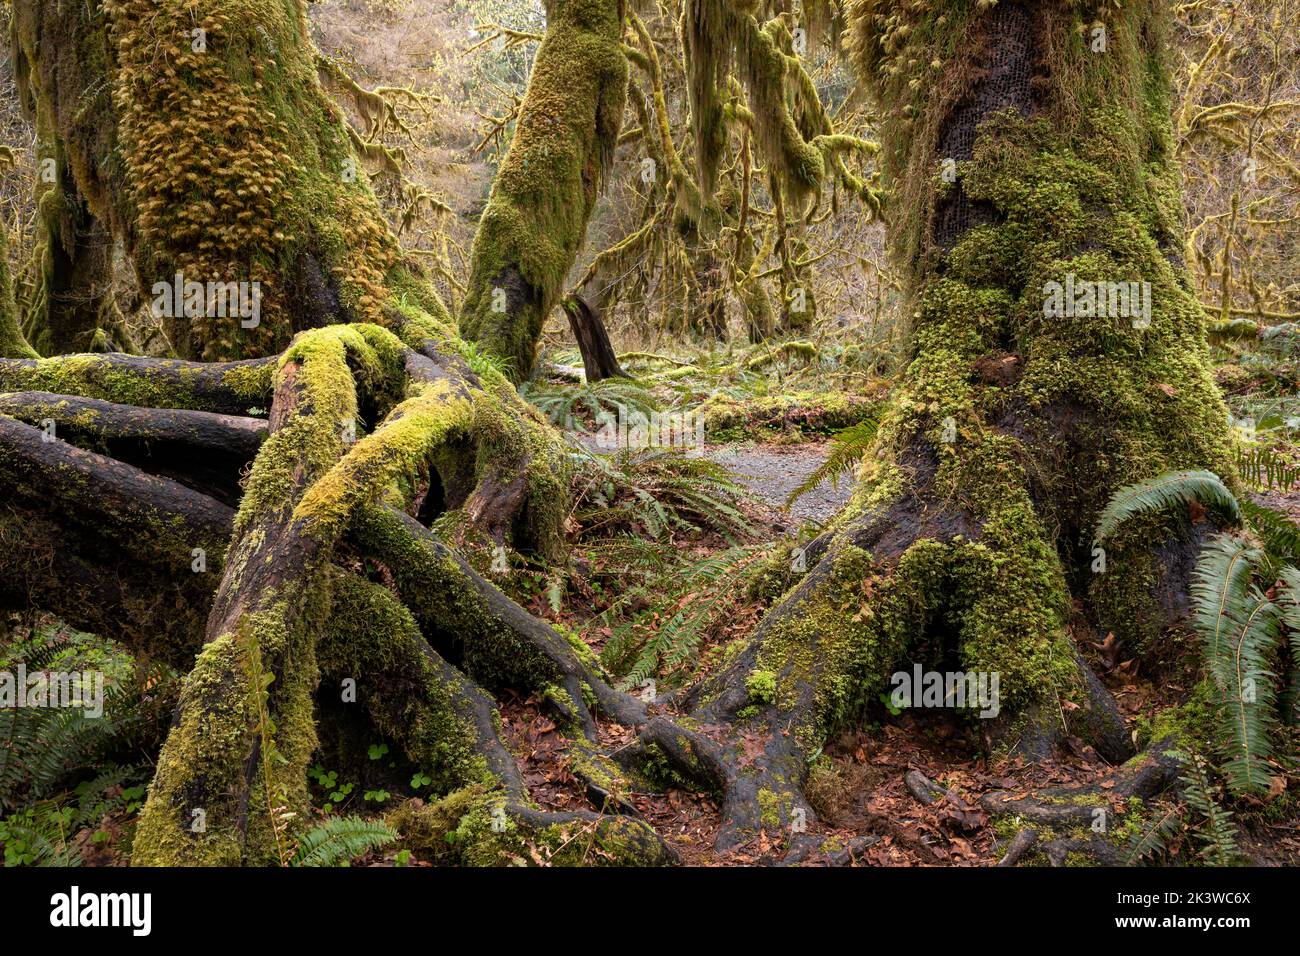 WA22099-00...WASHINGTON - Acero coperto di muschio nella Hall of Mosses, parte della foresta pluviale Hoh, nel Parco Nazionale Olimpico. Foto Stock